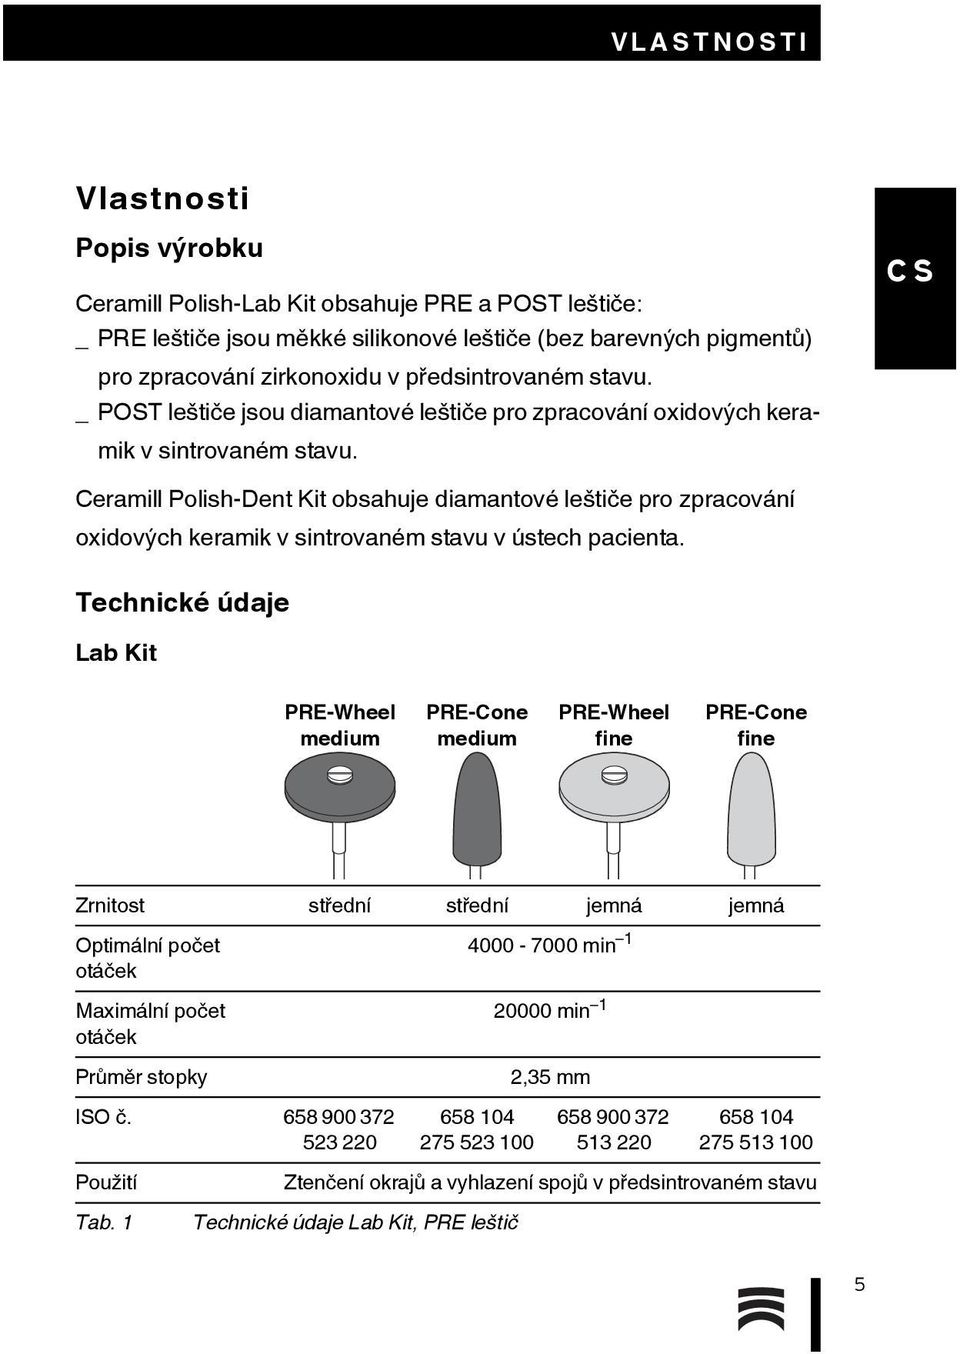 Ceramill Polish-Dent Kit obsahuje diamantové leštiče pro zpracování oxidových keramik v sintrovaném stavu v ústech pacienta.